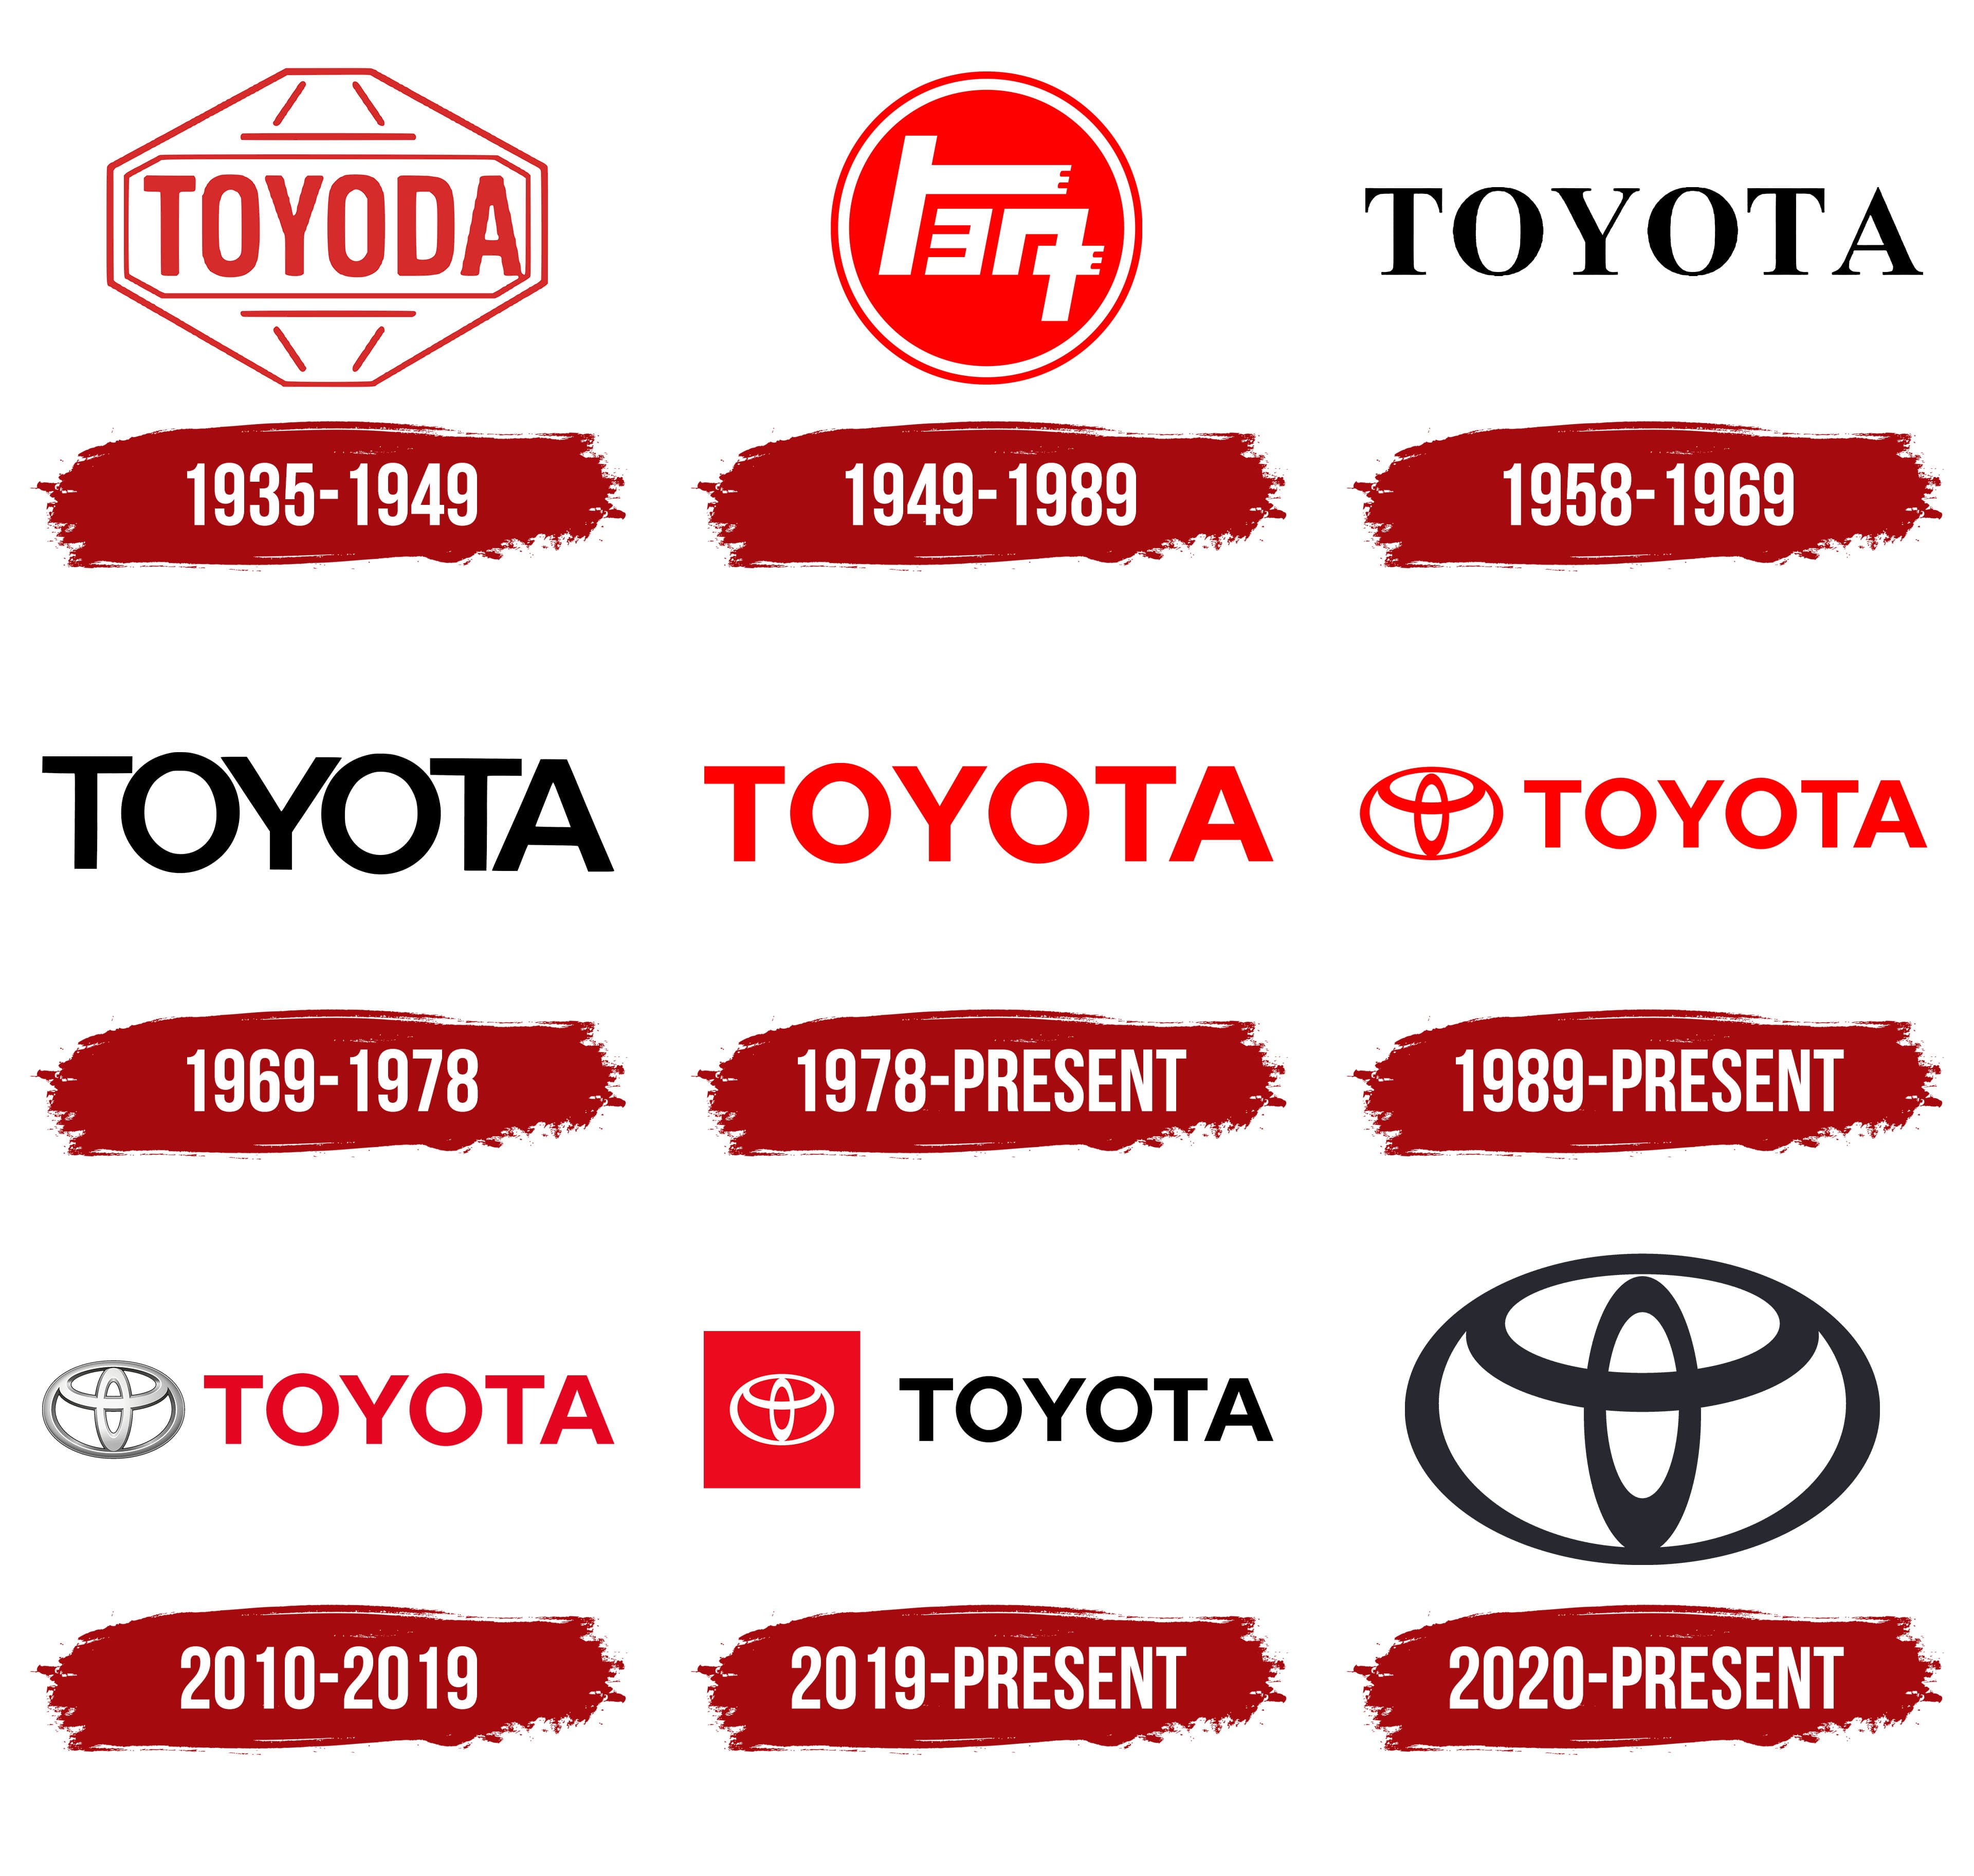 Tìm hiểu history of toyota logo từ những năm đầu cho tới hiện nay